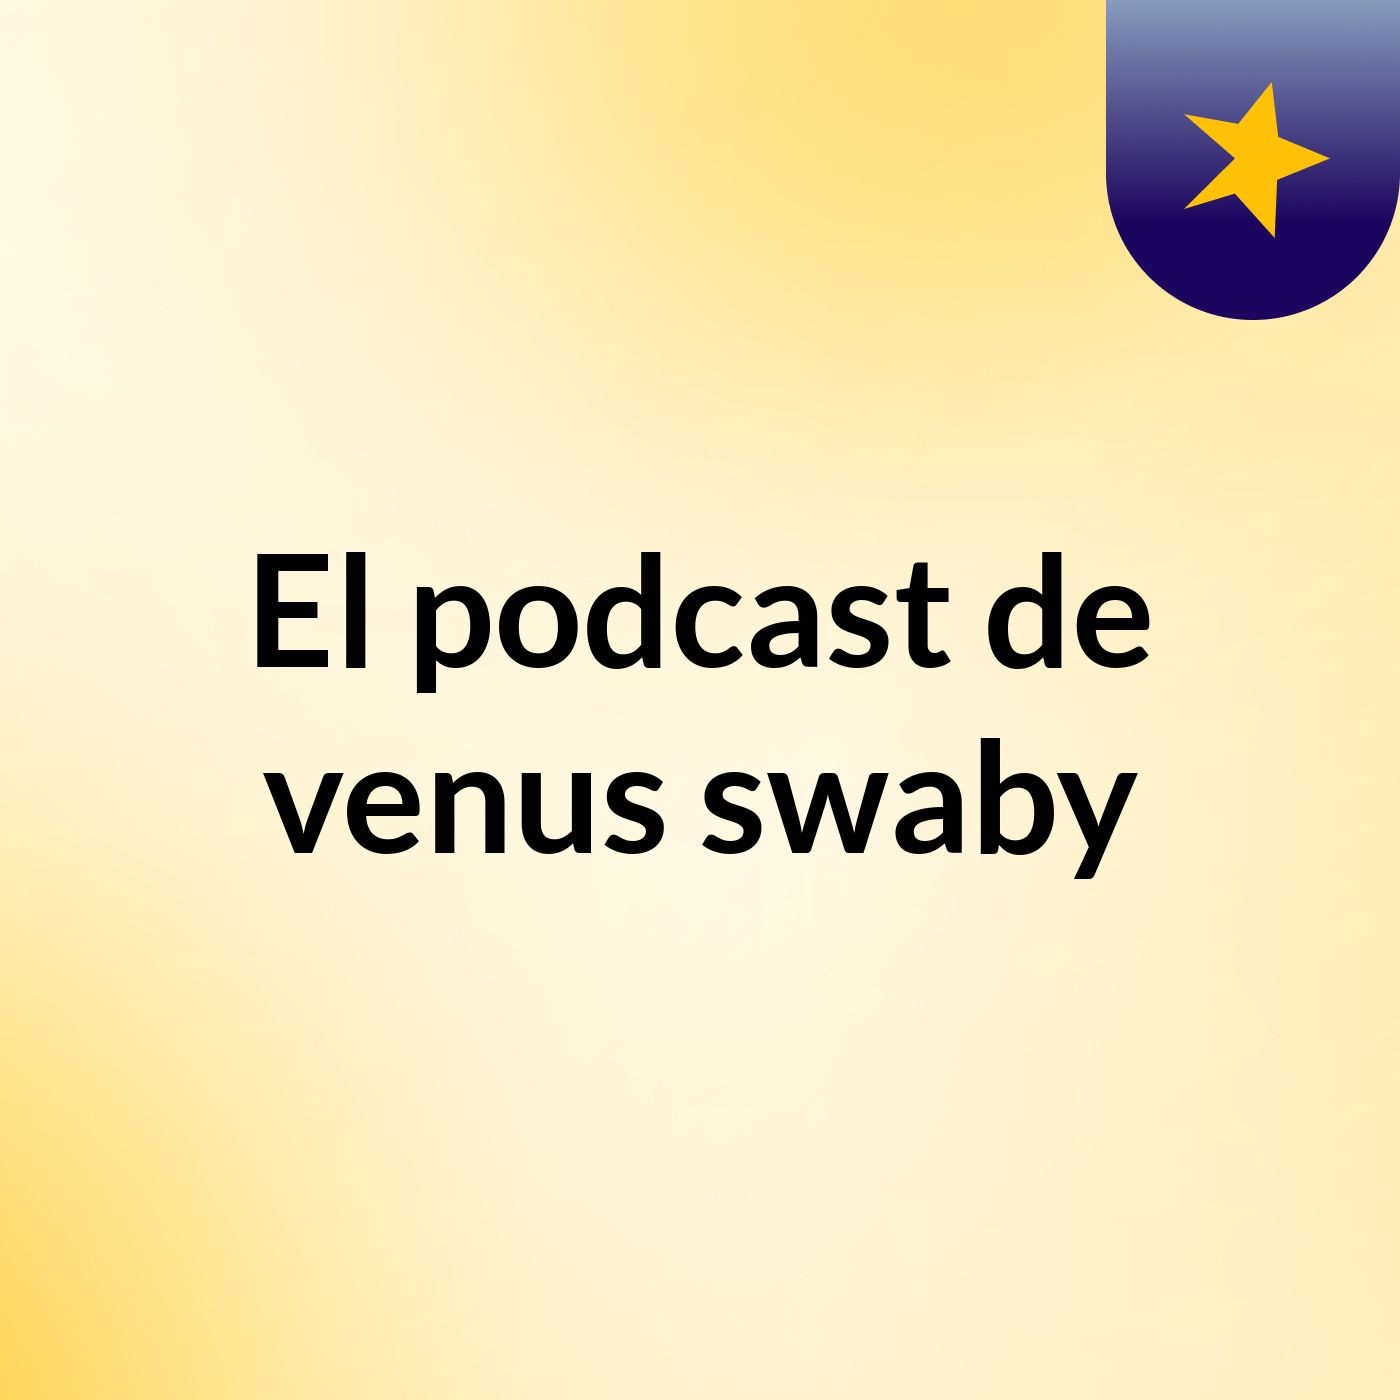 Episodio 3 - El podcast de venus swaby